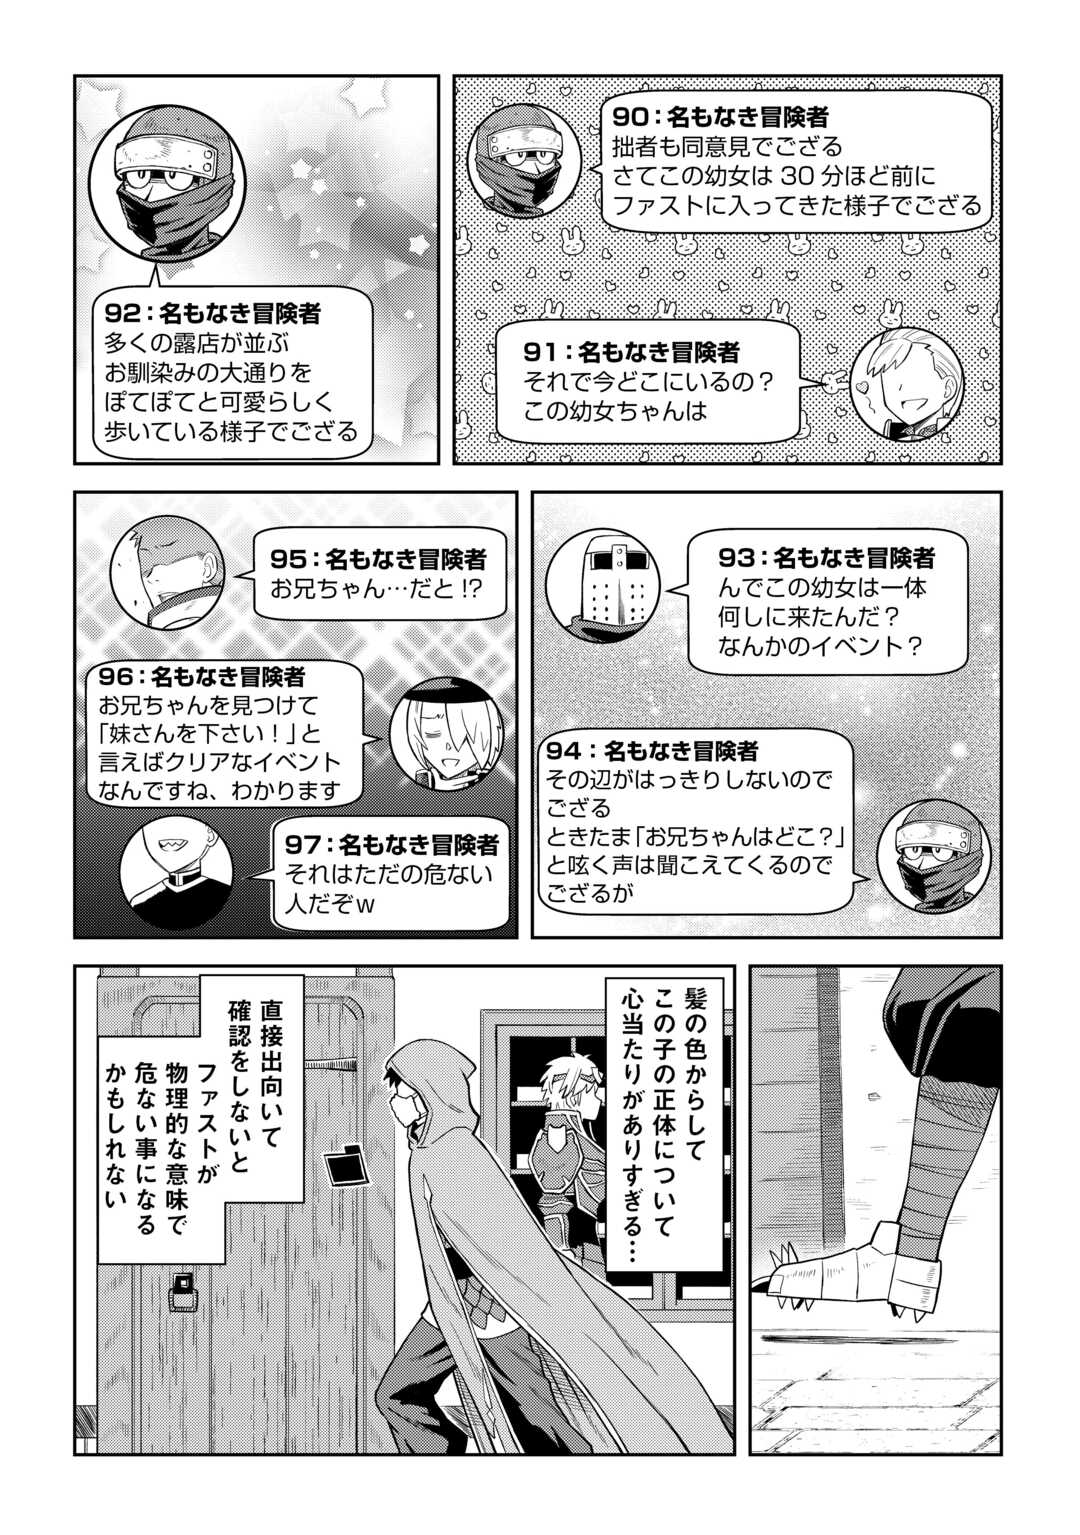 Toaru Ossan no VRMMO Katsudouki - Chapter 96 - Page 2